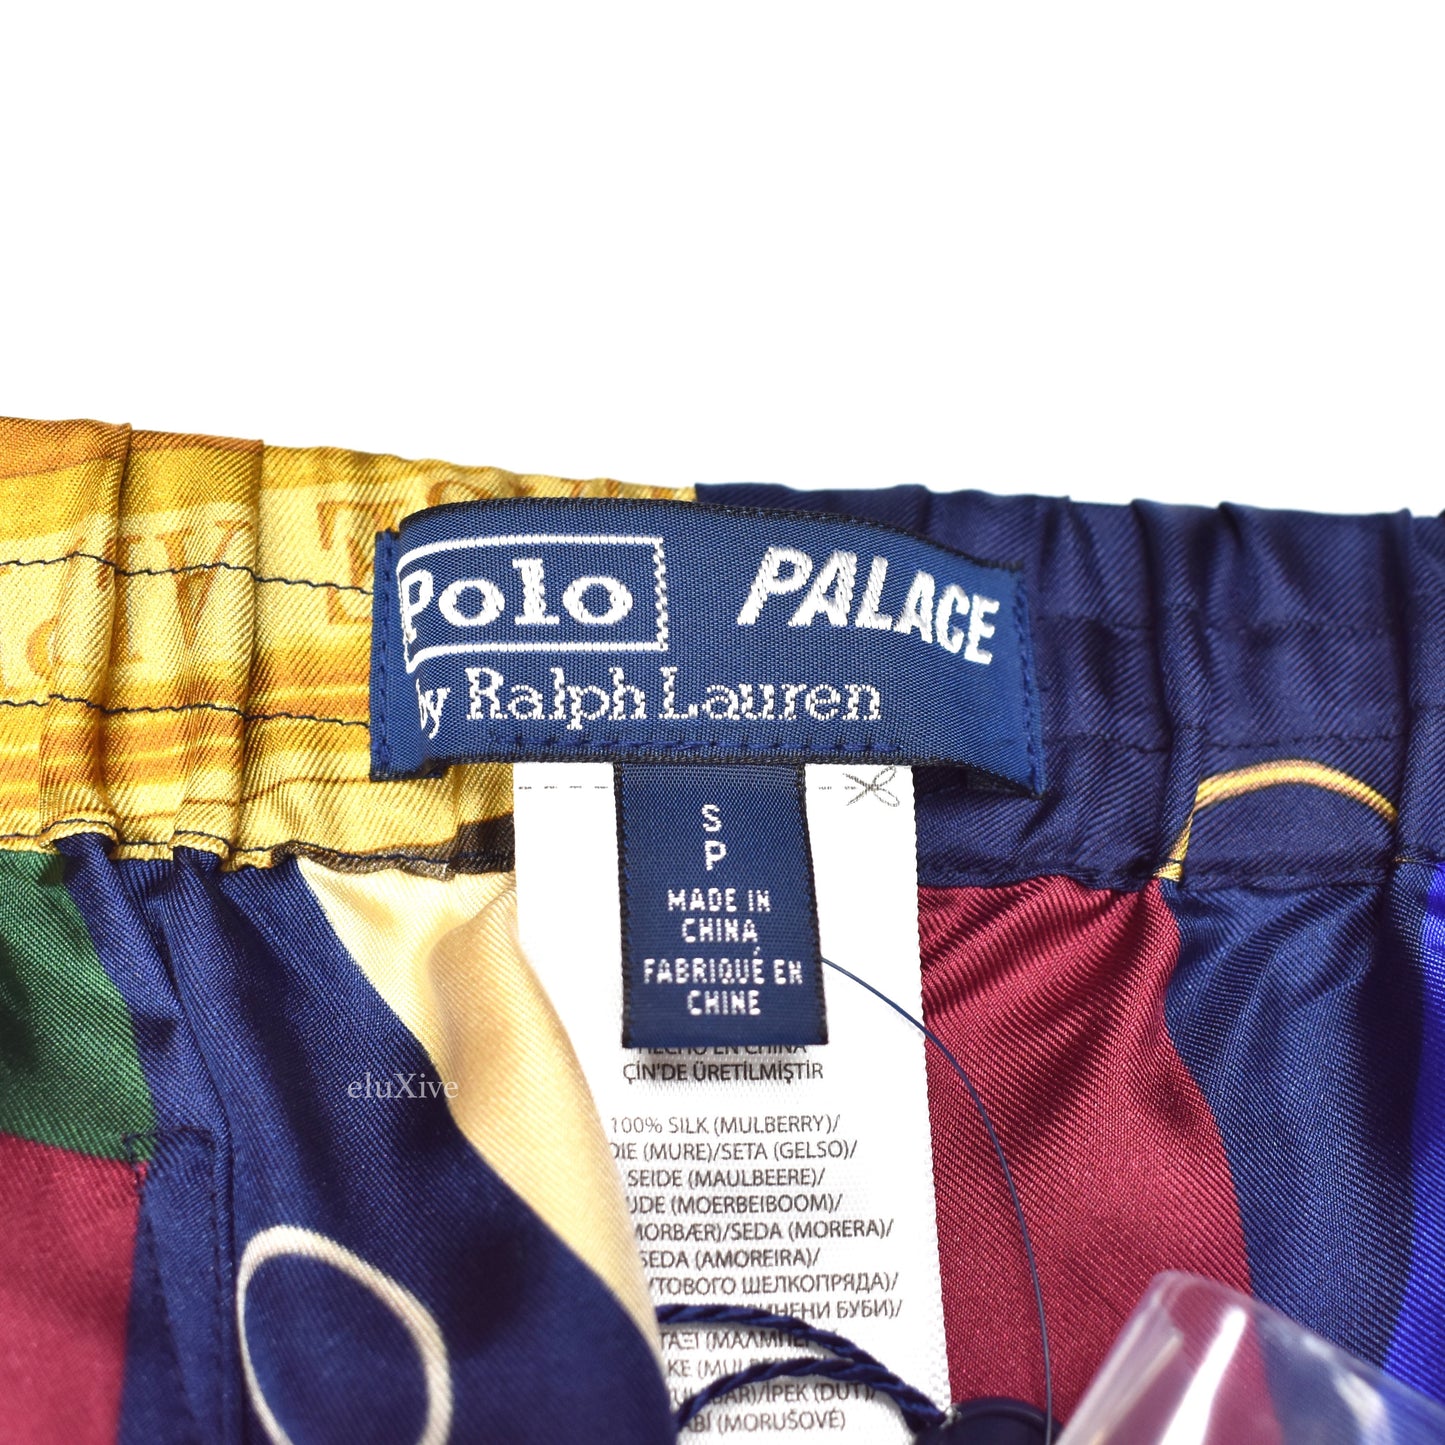 Palace x Ralph Lauren - Printed Silk Pajama Pants